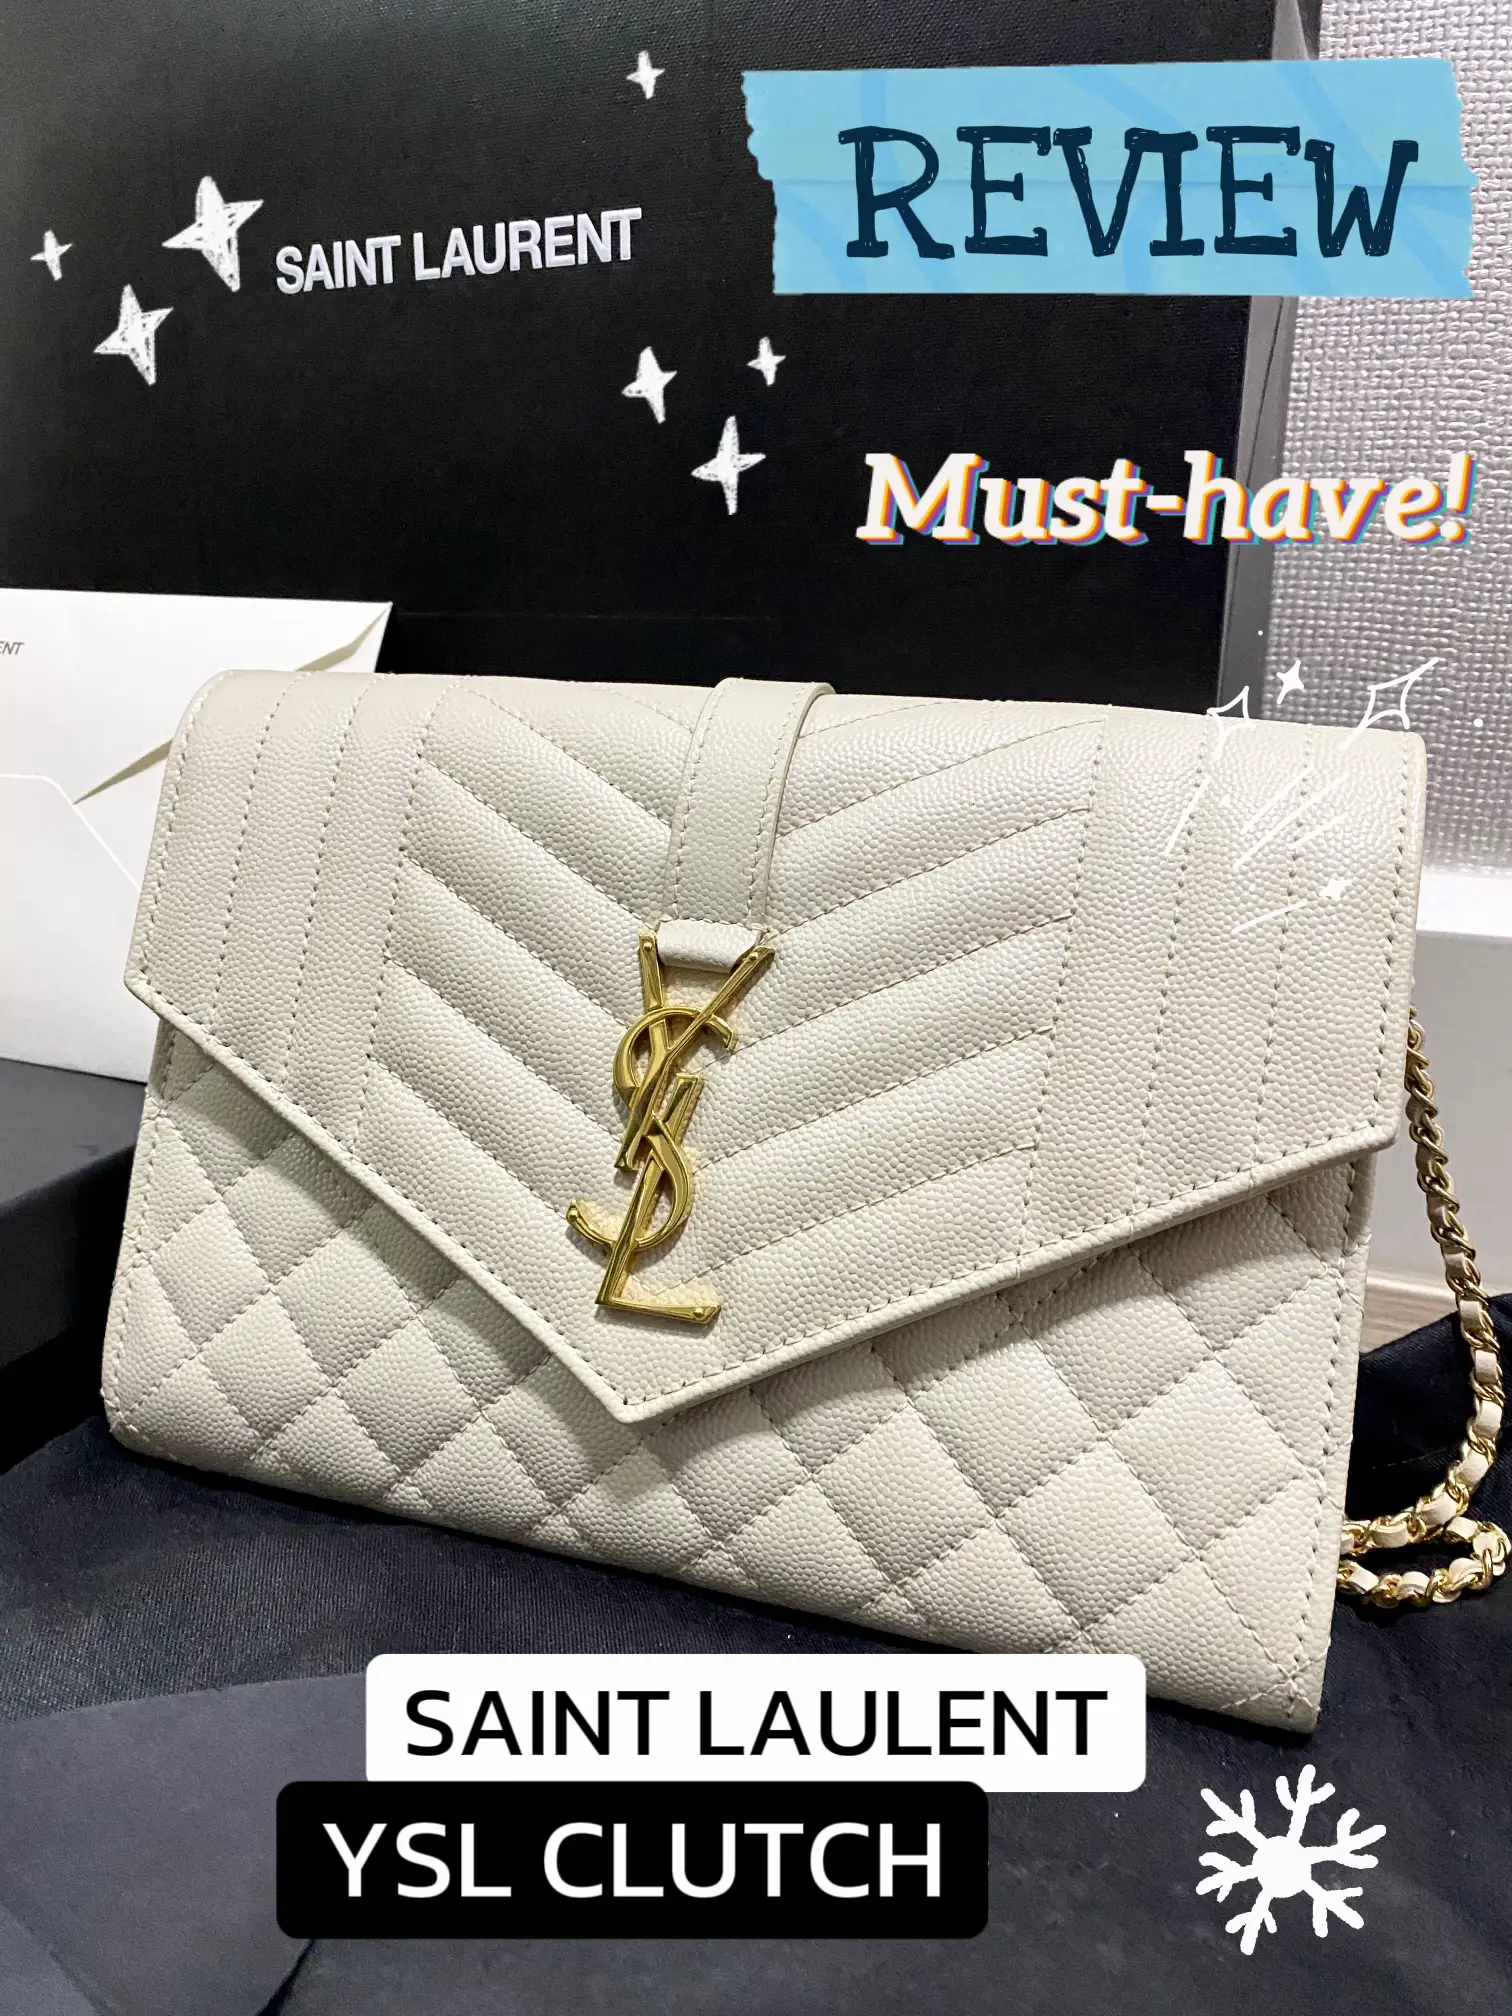 Saint Laurent Envelope Pouch Into A Cross Body/Shoulder Bag! #ysl